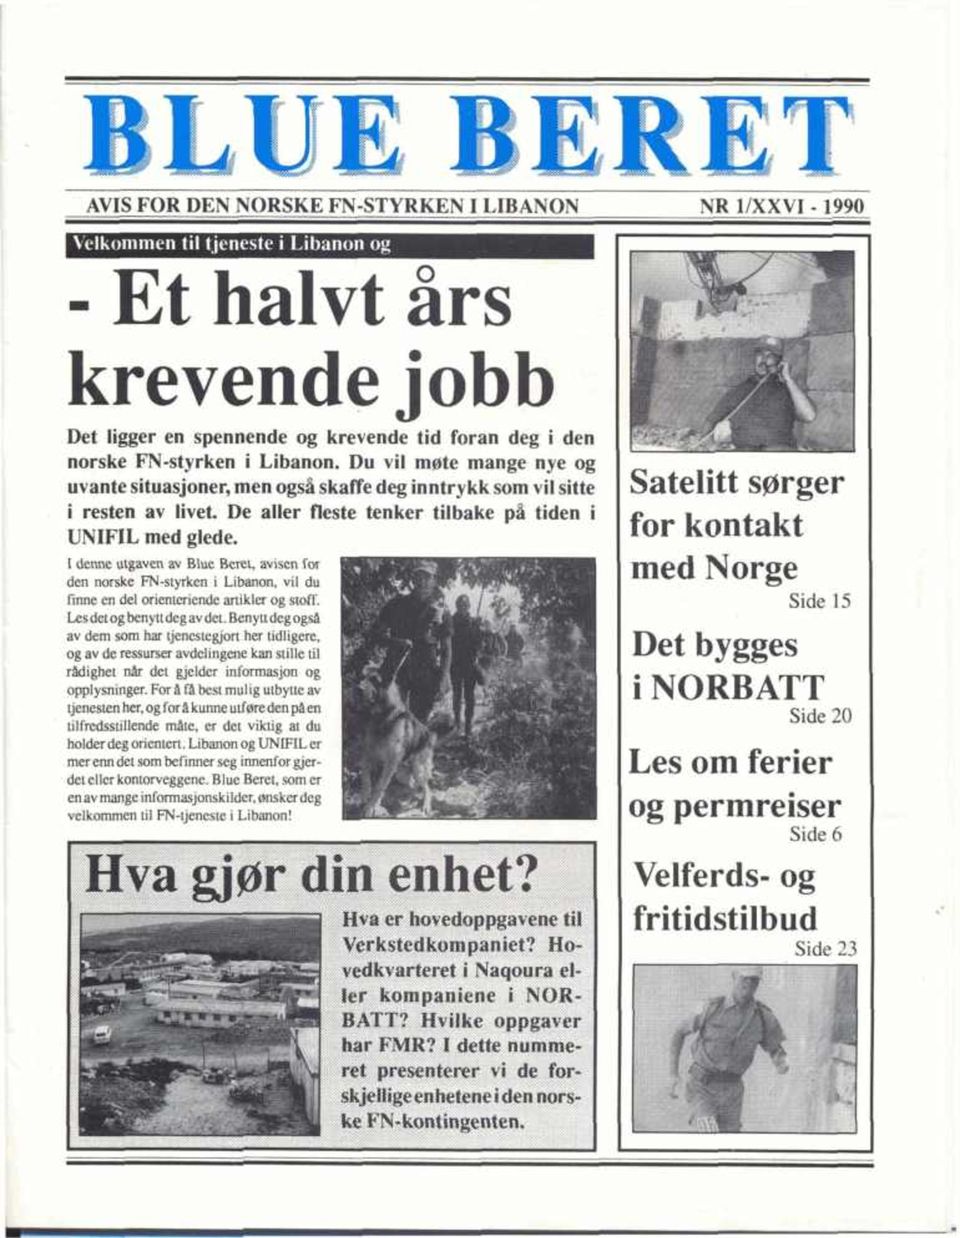 - 1 I denne utgaven av Blue Rcrct, av~scii for den norske M-st~ken i Litxanon, vil du finne en del arienteriende artikler og stoff. Lesdetog benyttdeg avdet.